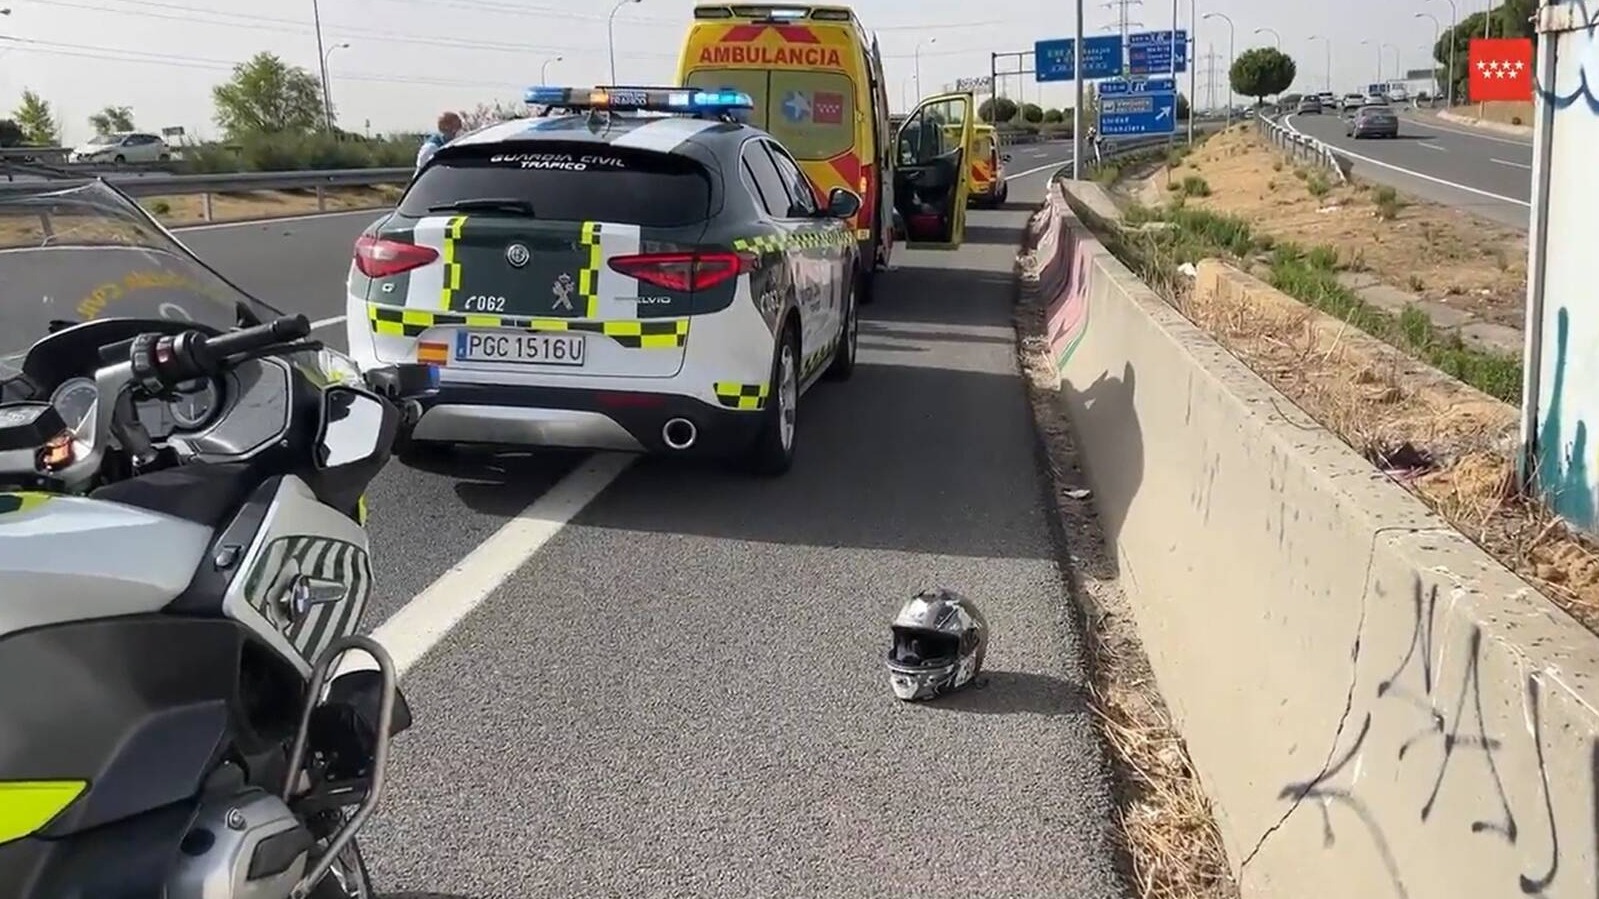 Fallece un hombre de 26 años tras caer a gran velocidad de una motocicleta en la M-40 a la altura de Pozuelo